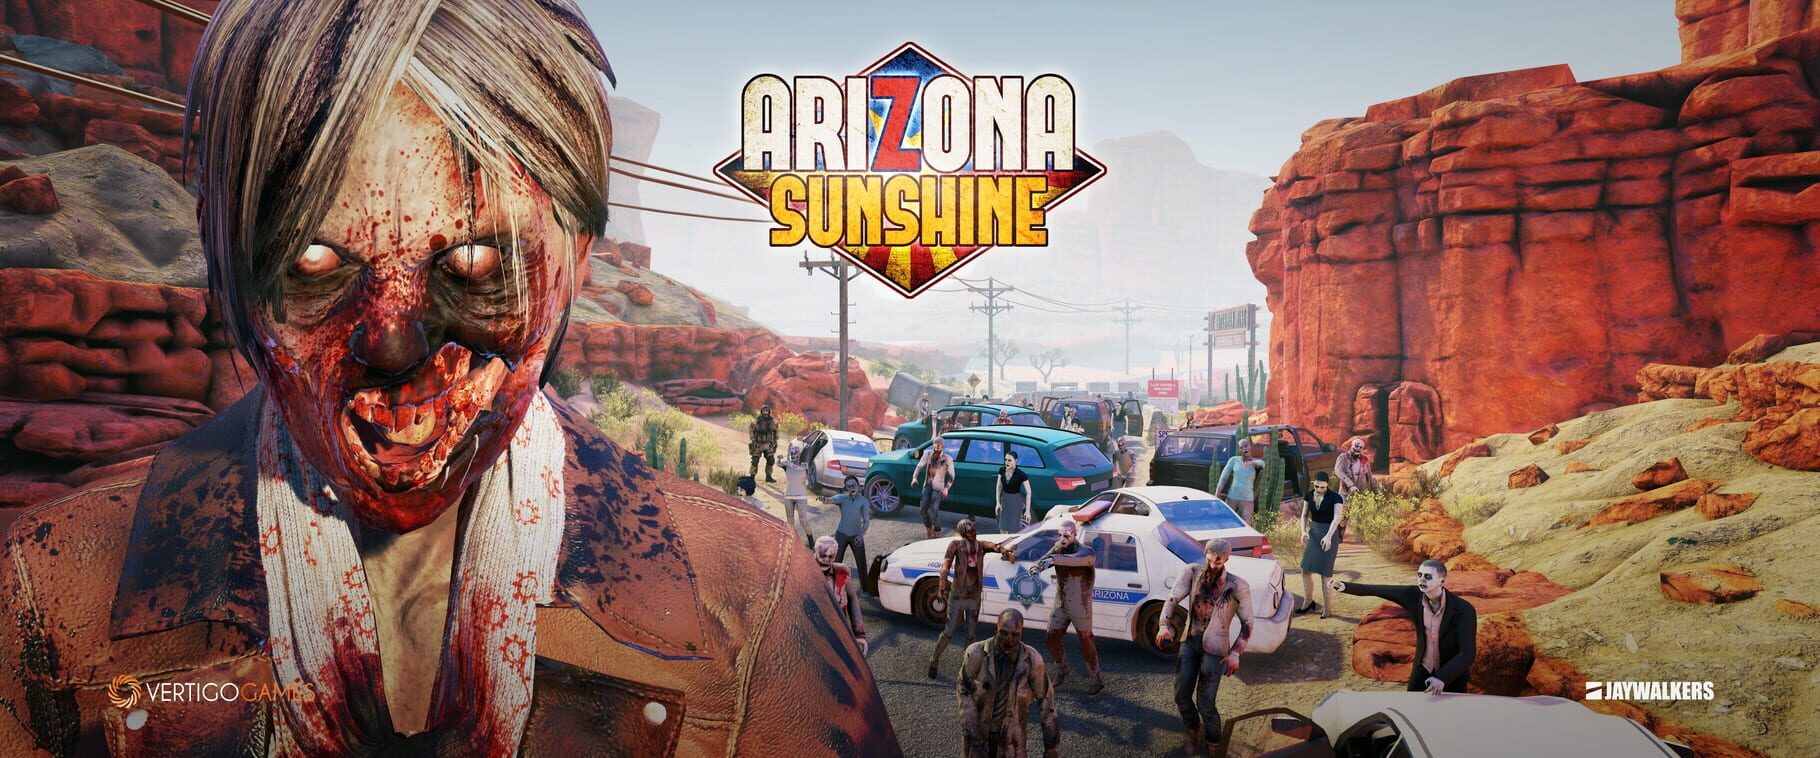 Arte - Arizona Sunshine